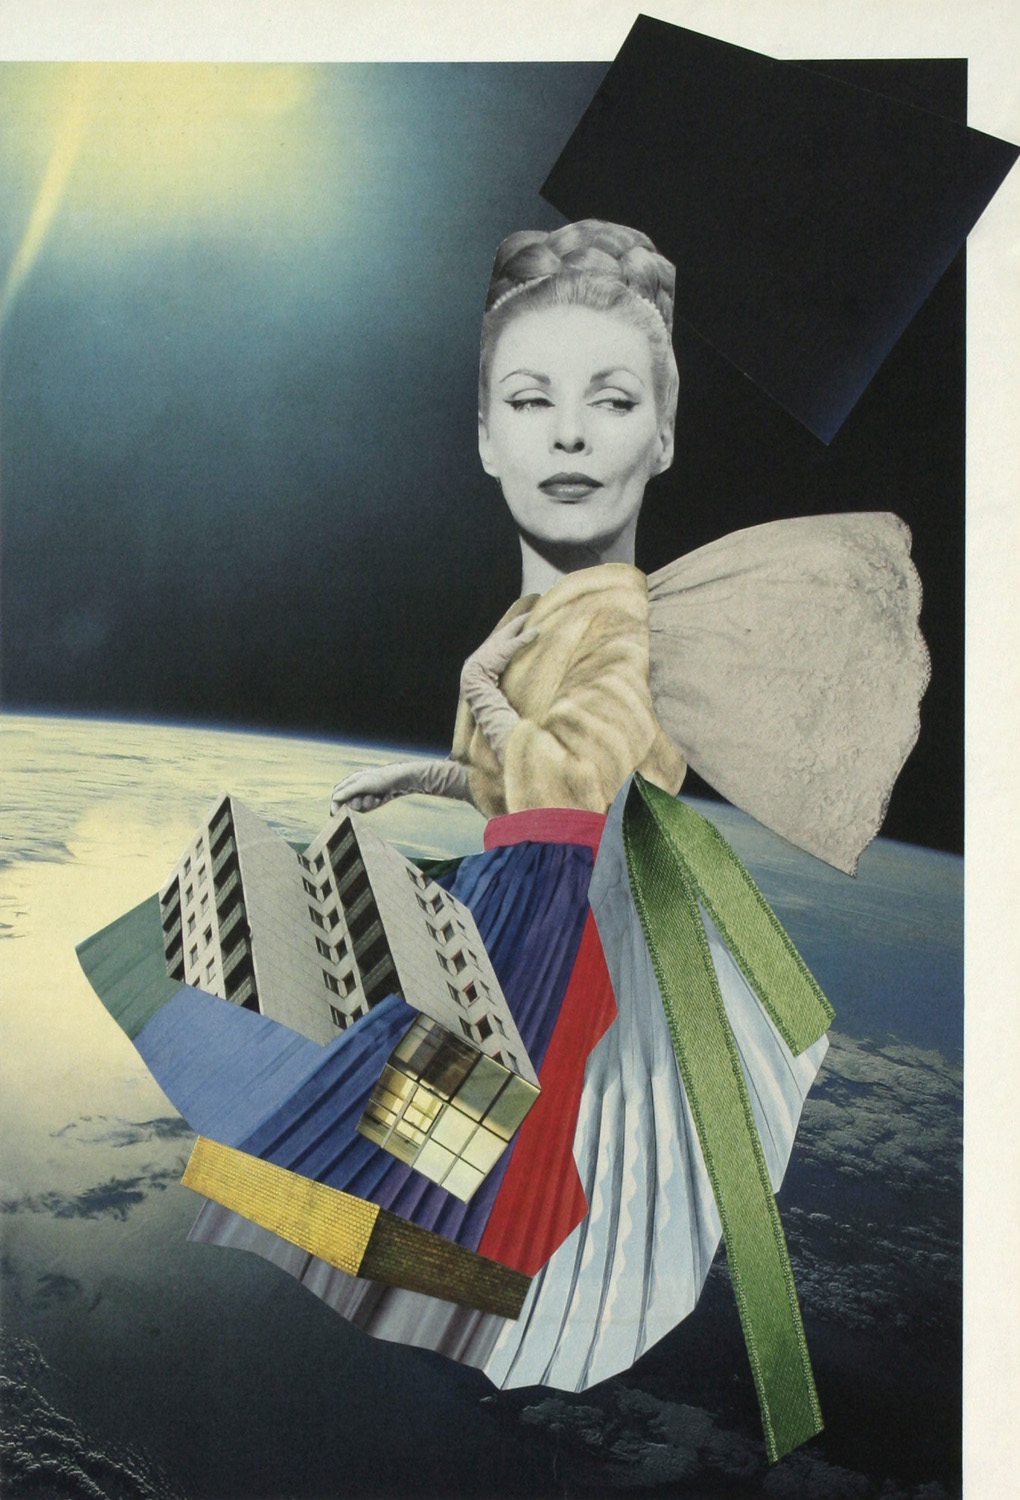 Nymphe der ungenannten Quellen, collage by Ricarda Wallhäuser